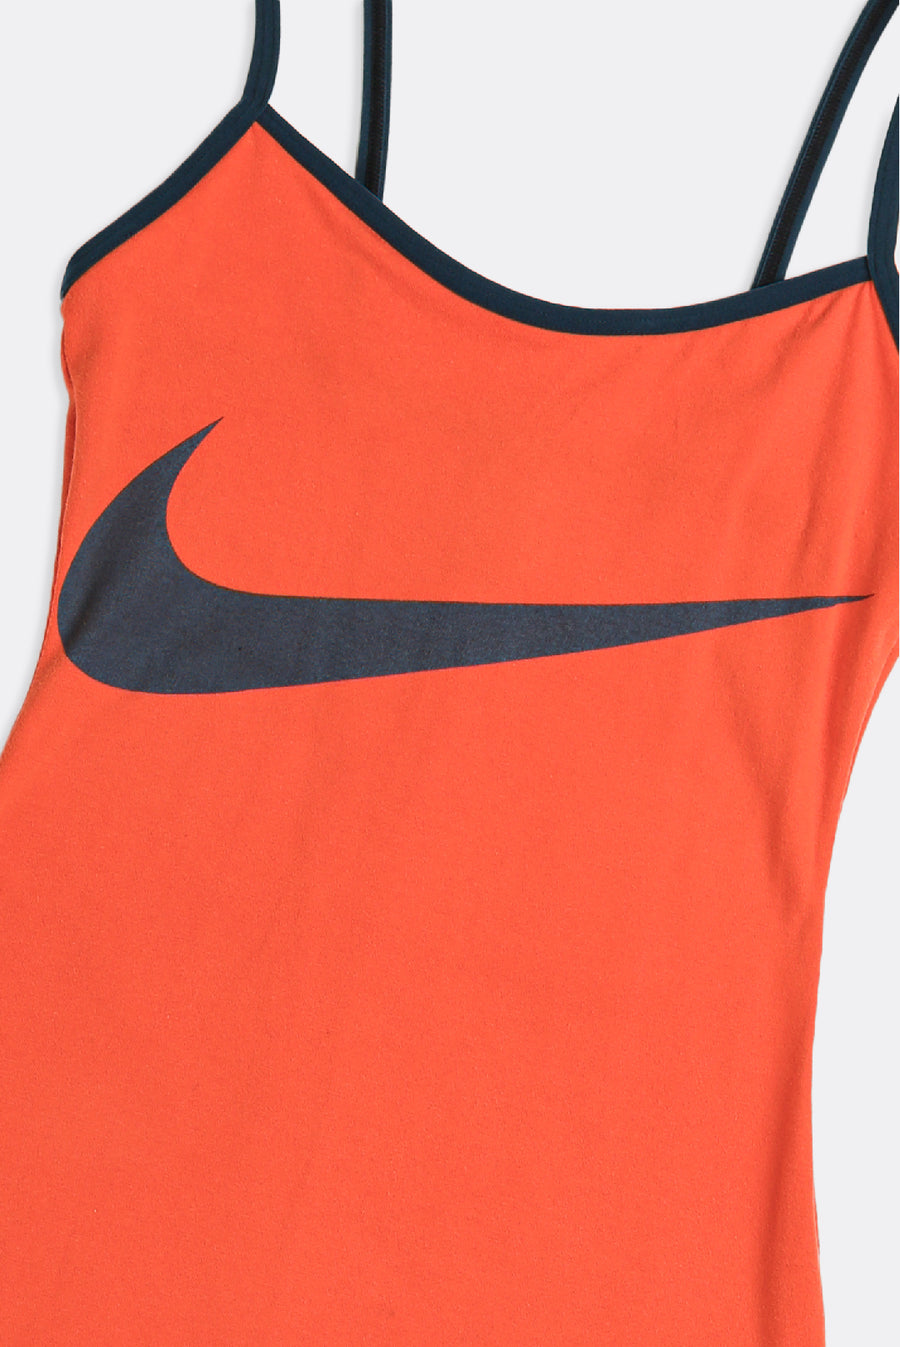 Rework Nike Strappy Dress - XS